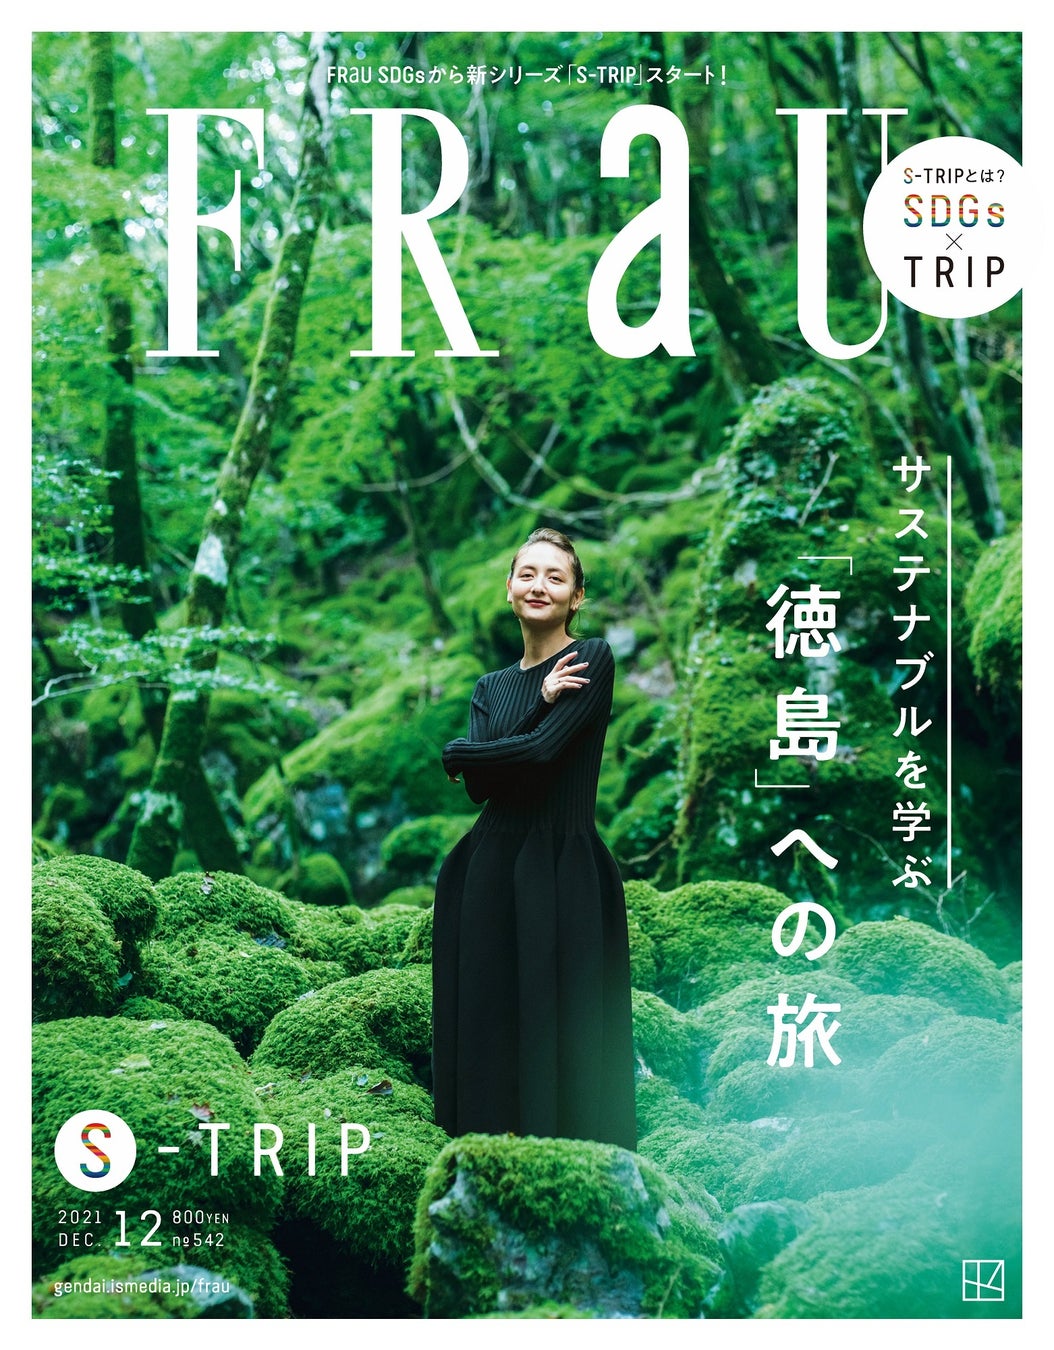 FRaU S-TRIPプロジェクト第一弾「FRaU S-TRIP サステナブルを学ぶ『徳島』への旅」が、日本雑誌広告賞『広告賞運営委員会特別賞 銀賞』を受賞のサブ画像1_受賞した「FRaU S-TRIP サステナブルを学ぶ『徳島』への旅」